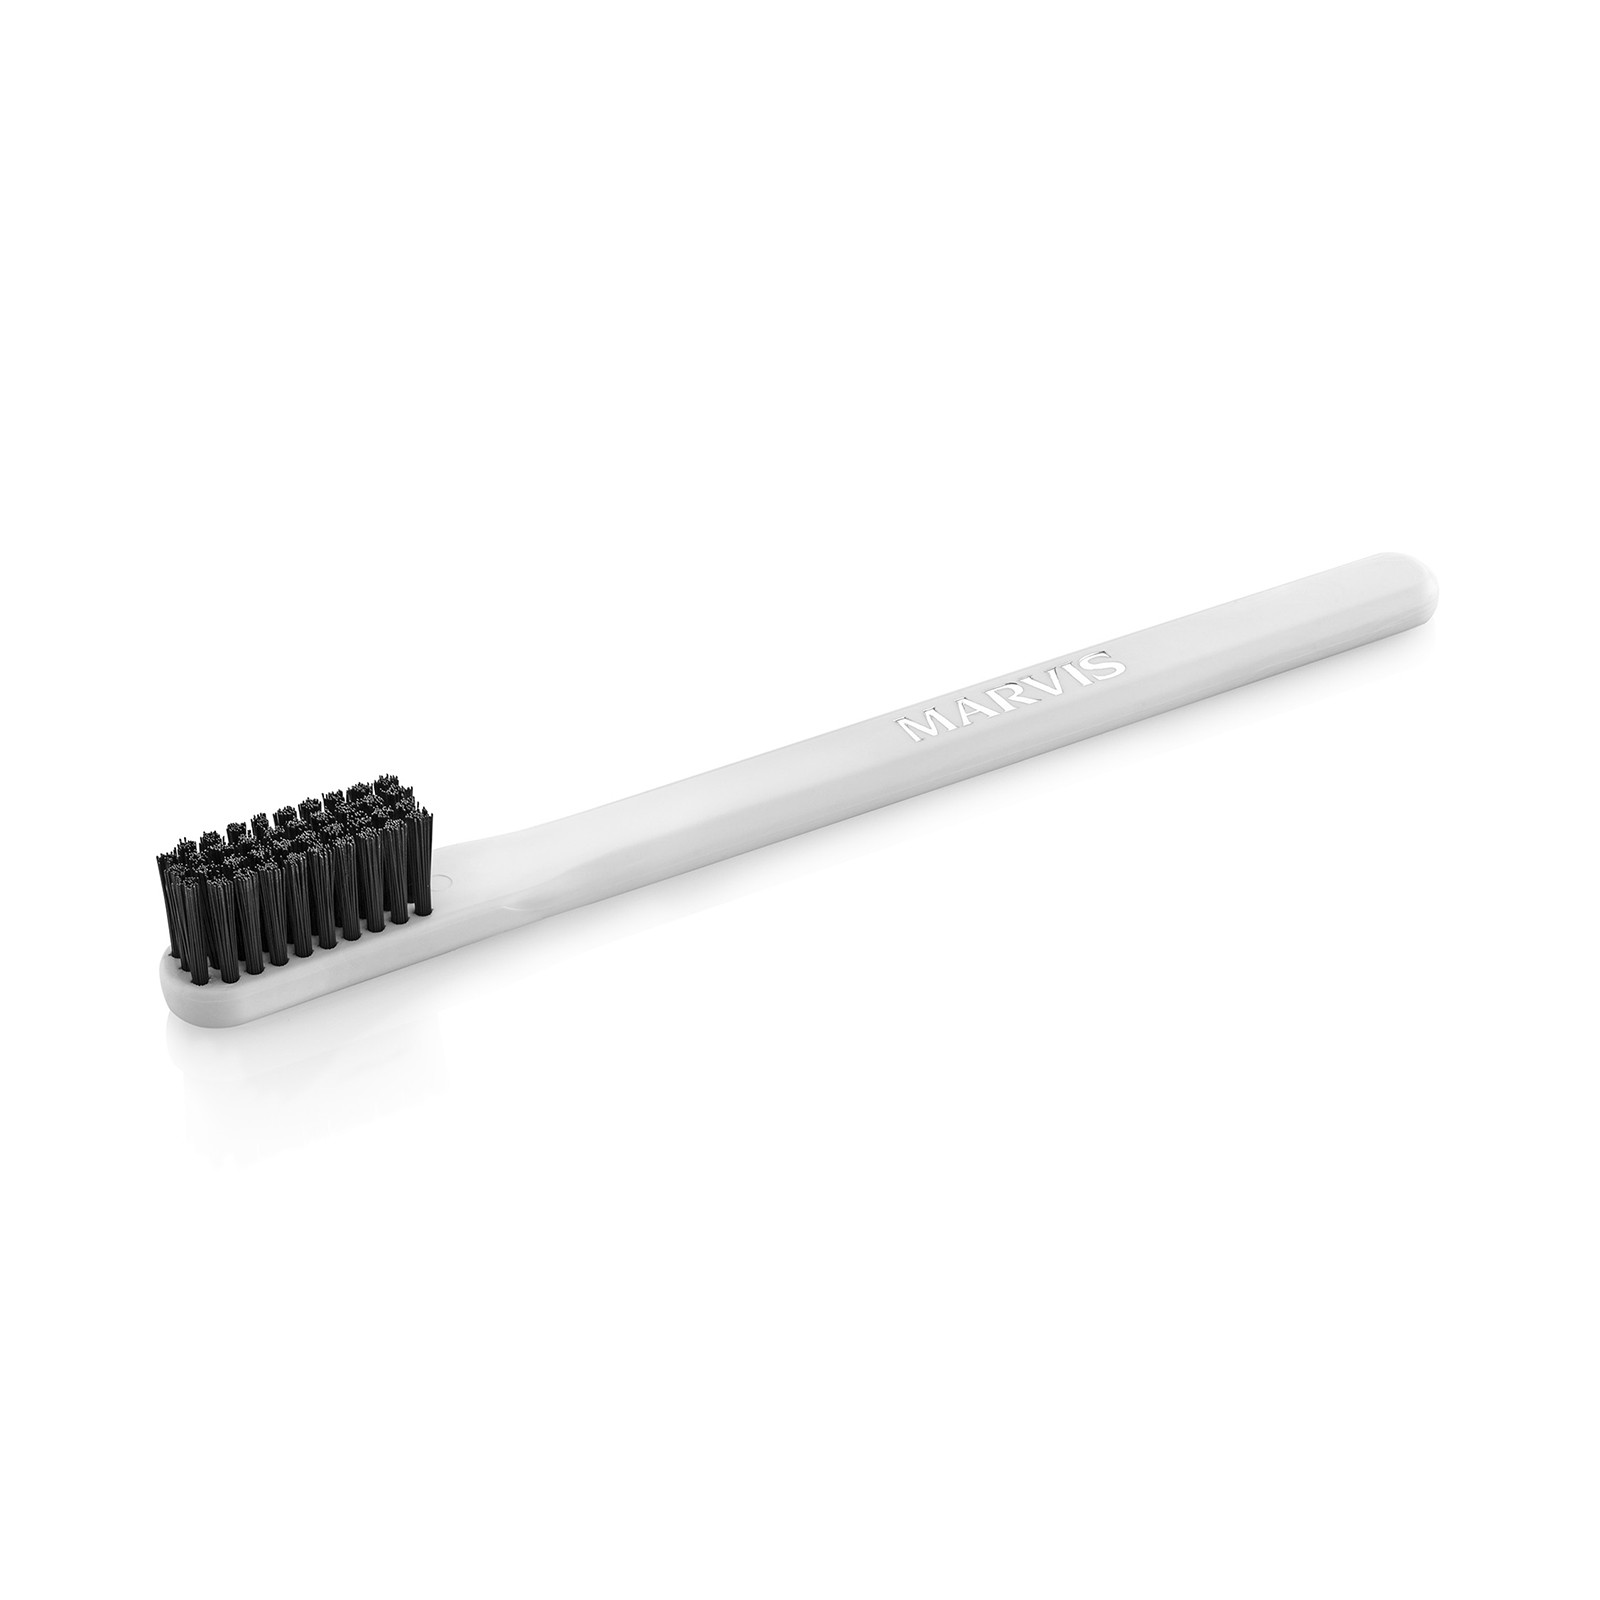 Мягкая зубная щетка Marvis White Soft Toothbrush